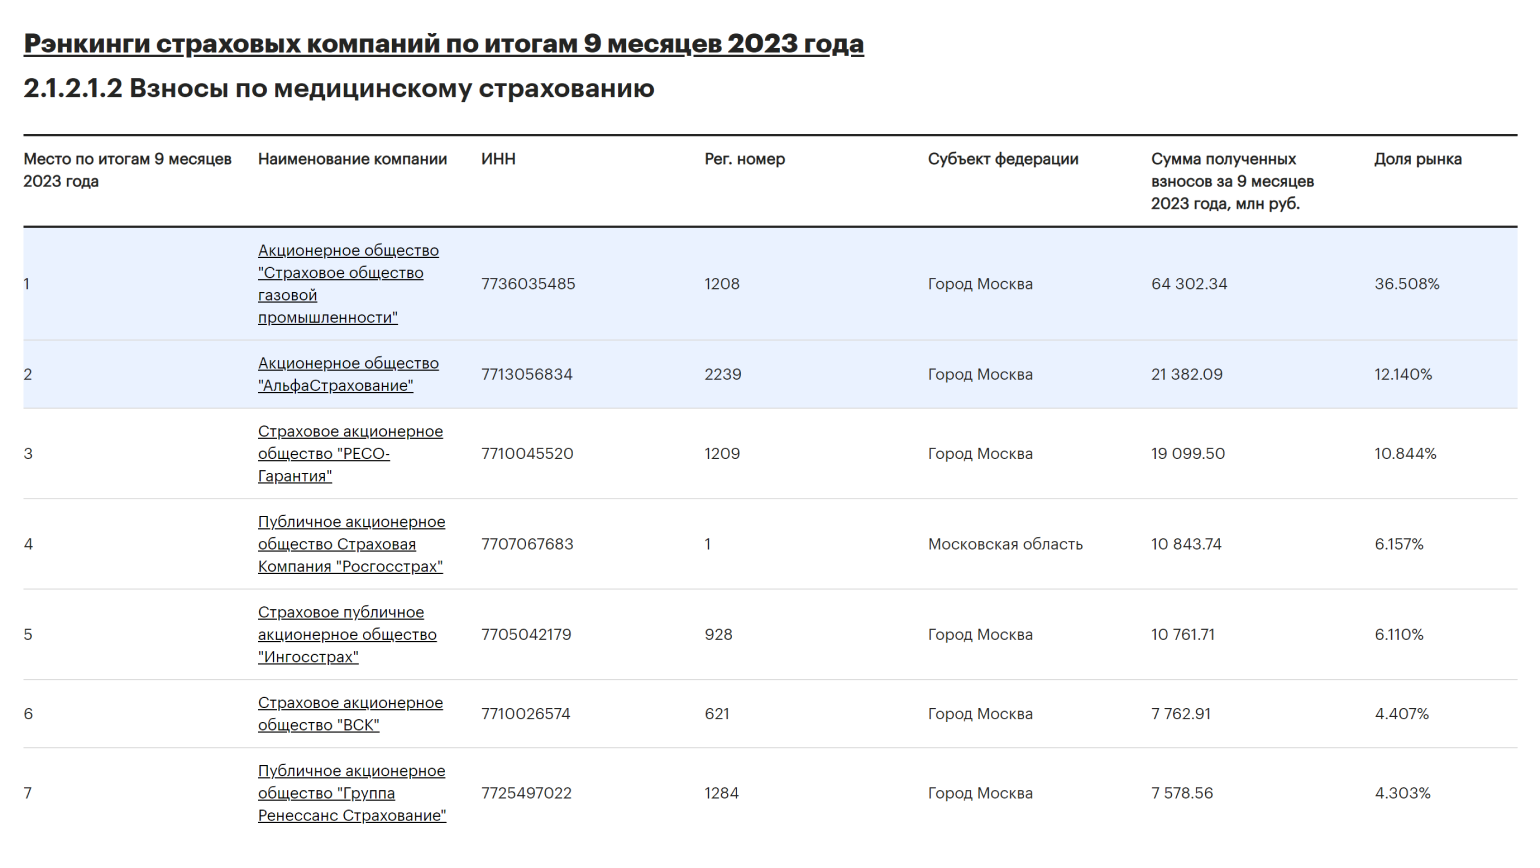 Лидирующие страховые компании на российском рынке ДМС по итогам 9 месяцев в 2023 году по данным рейтингового агентства «Эксперт»